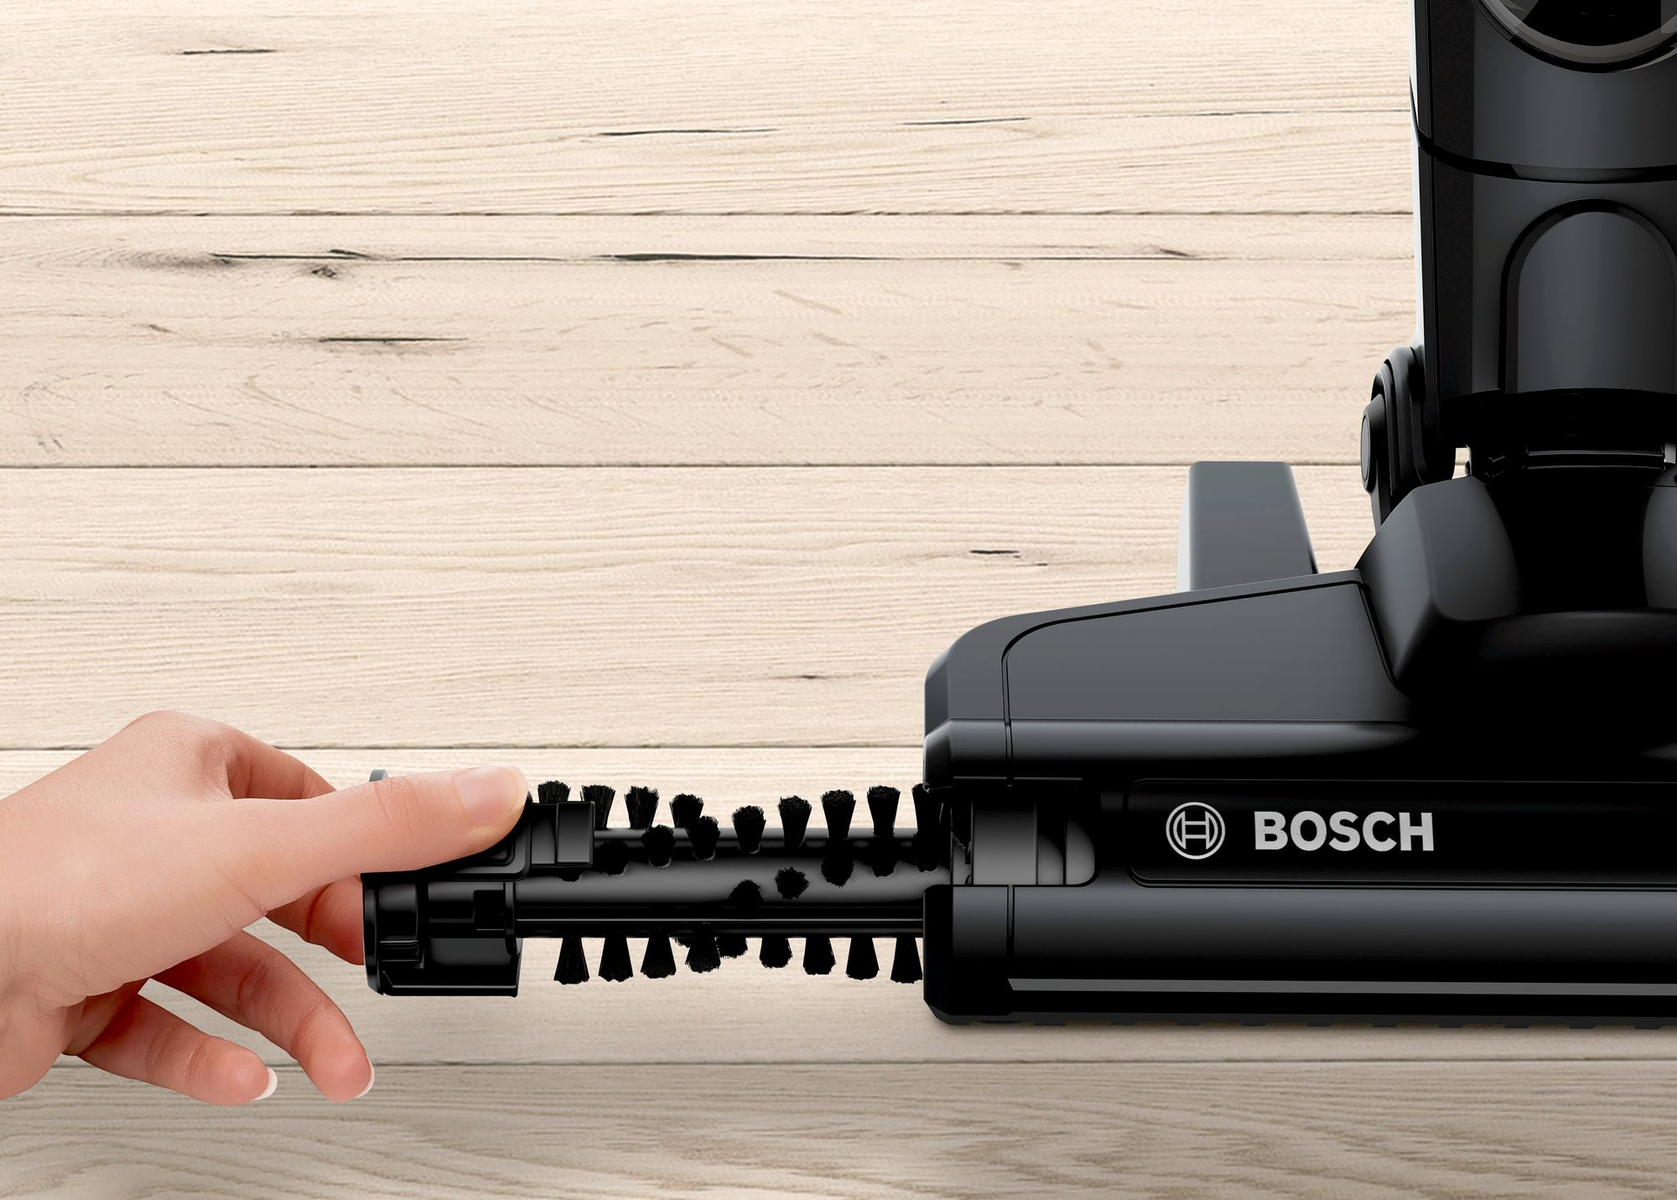 BOSCH HOGAR Bosch Serie 2 20 Handstaubsauger BBHF220 Batteriebetrieb, Schwarz Watt Handstaubsauger, Beutellos